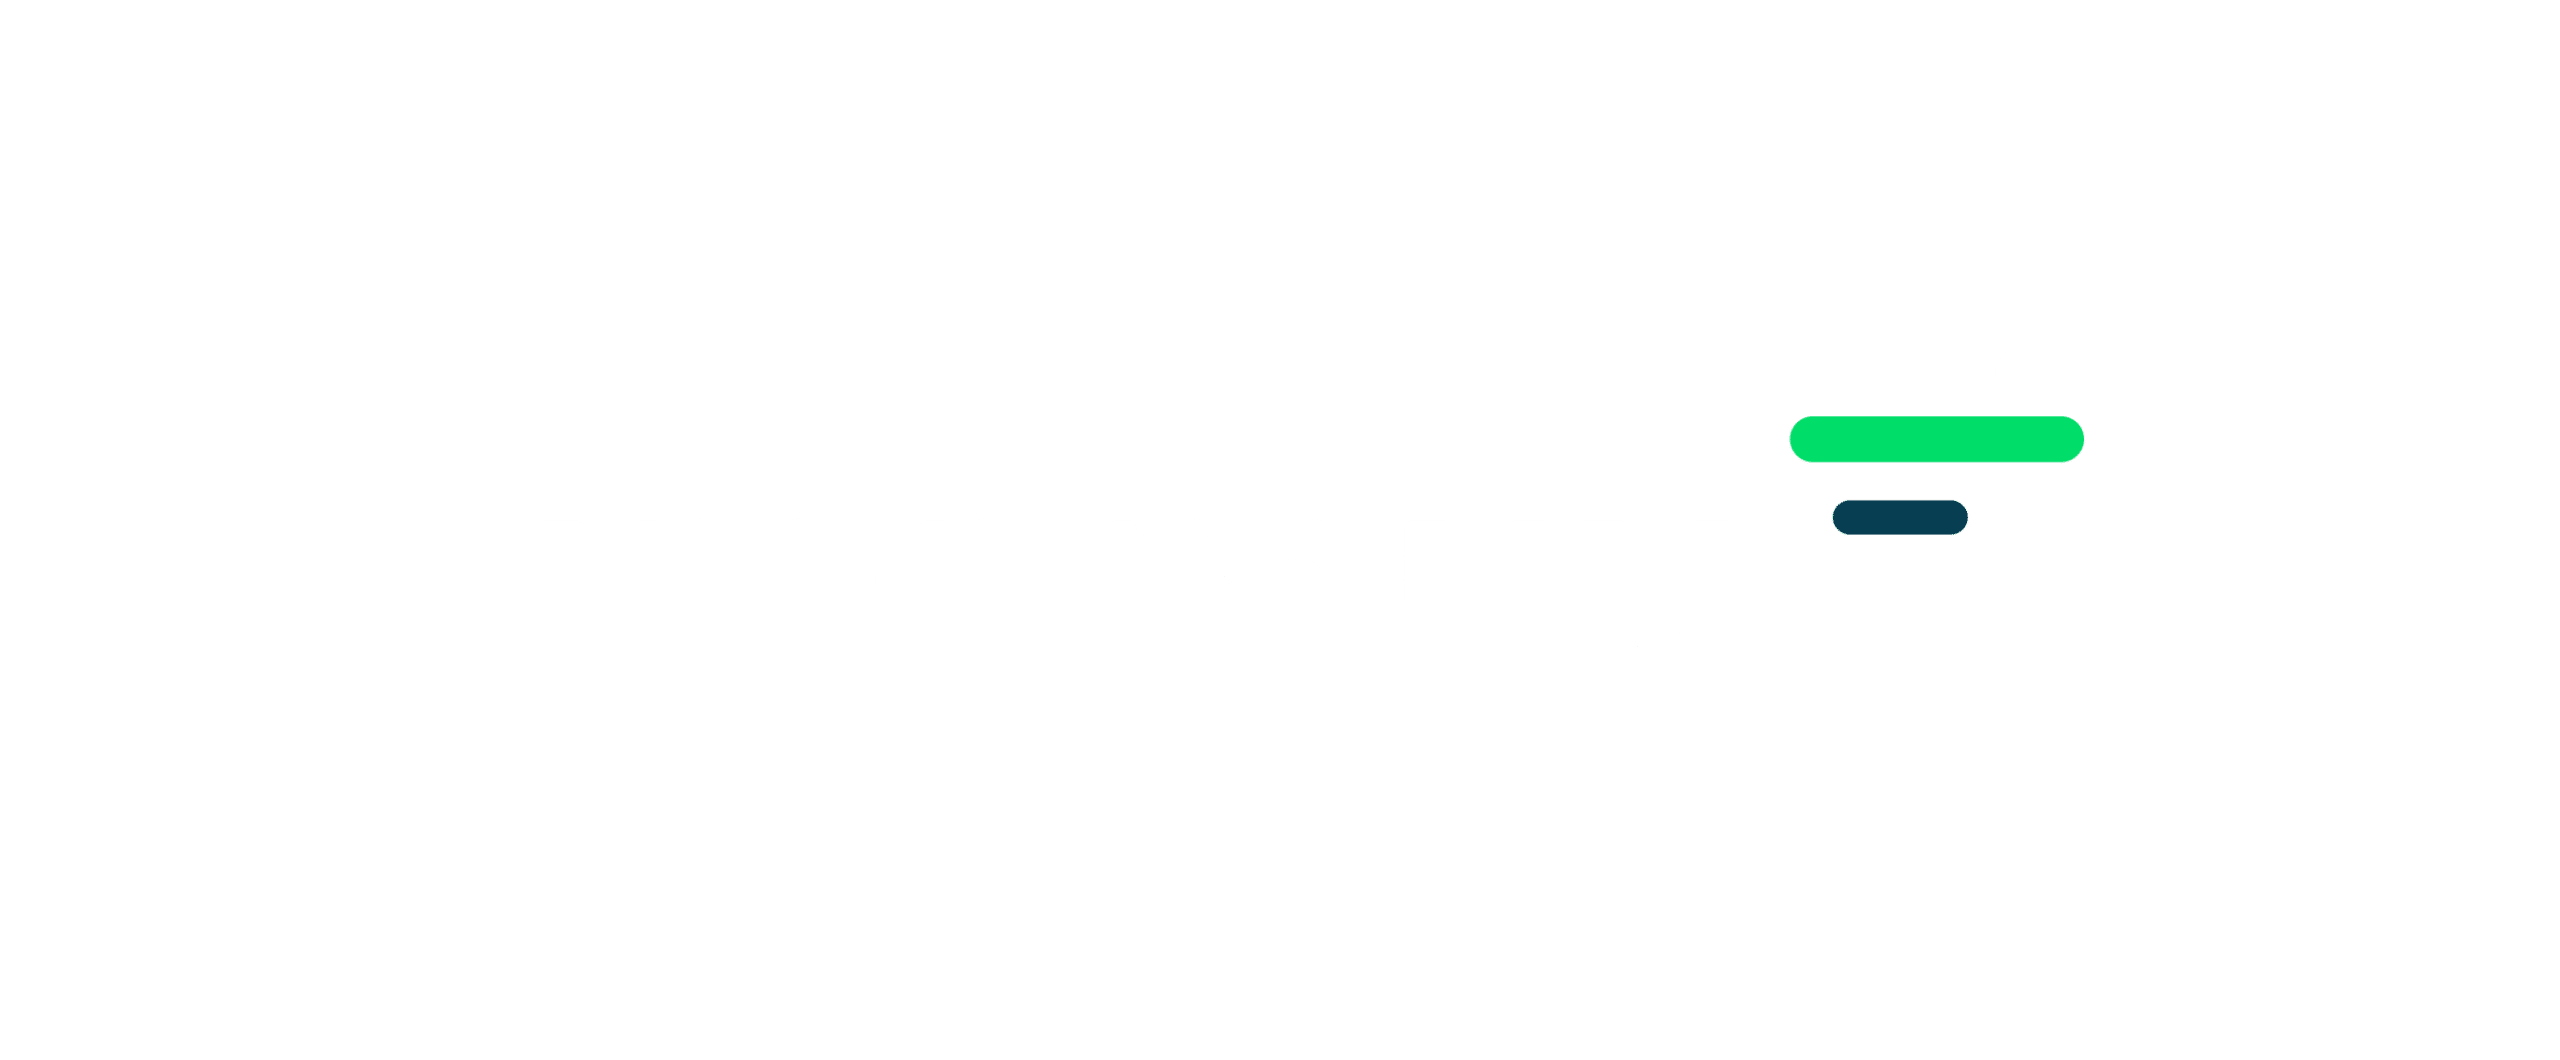 Logo improuv